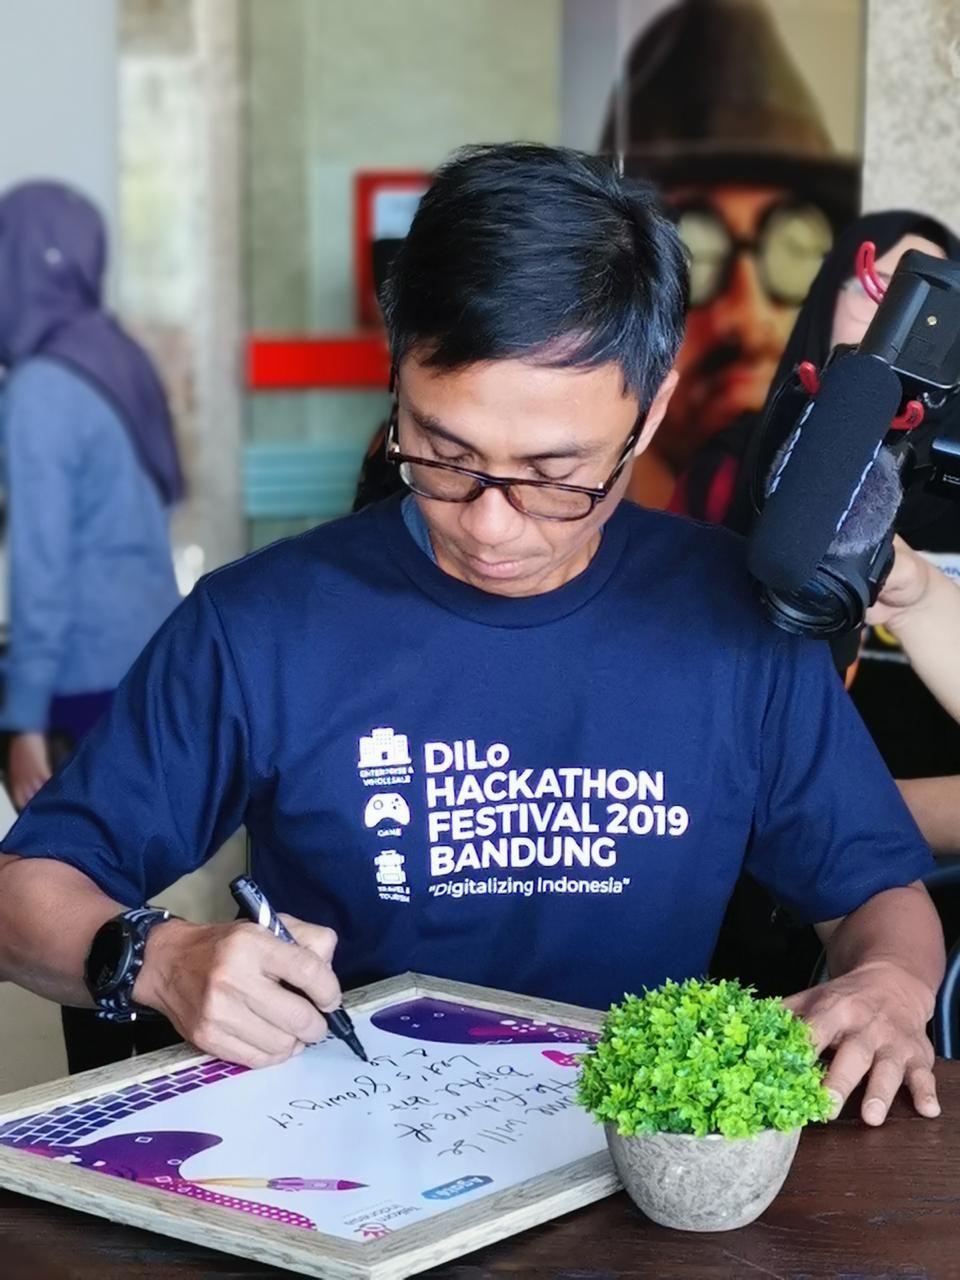 Dilo Hackathon Festival 2019